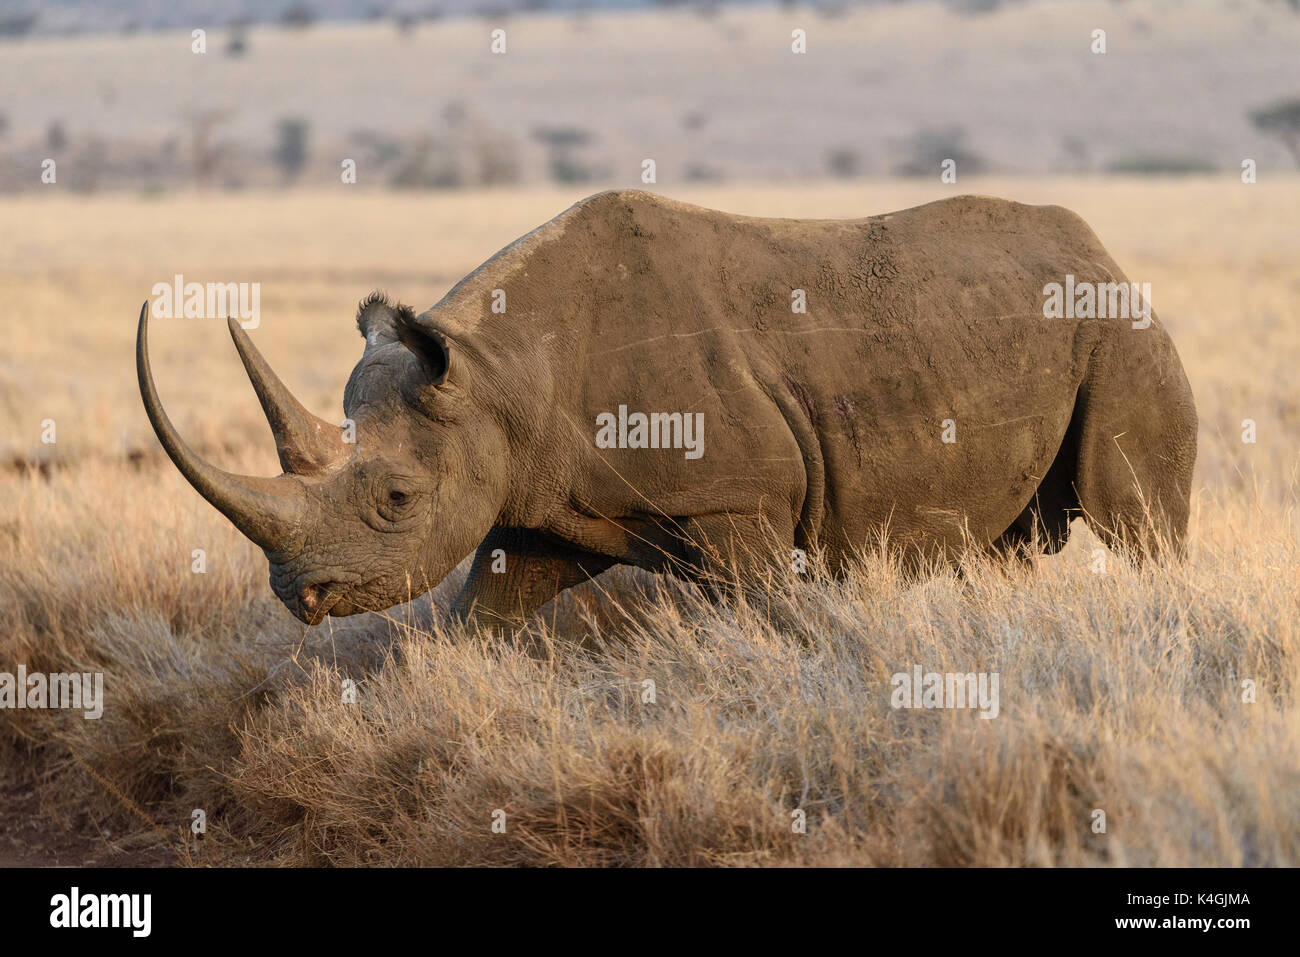 Rhinocéros noir en voie de disparition, lewa conservancy, Kenya Banque D'Images